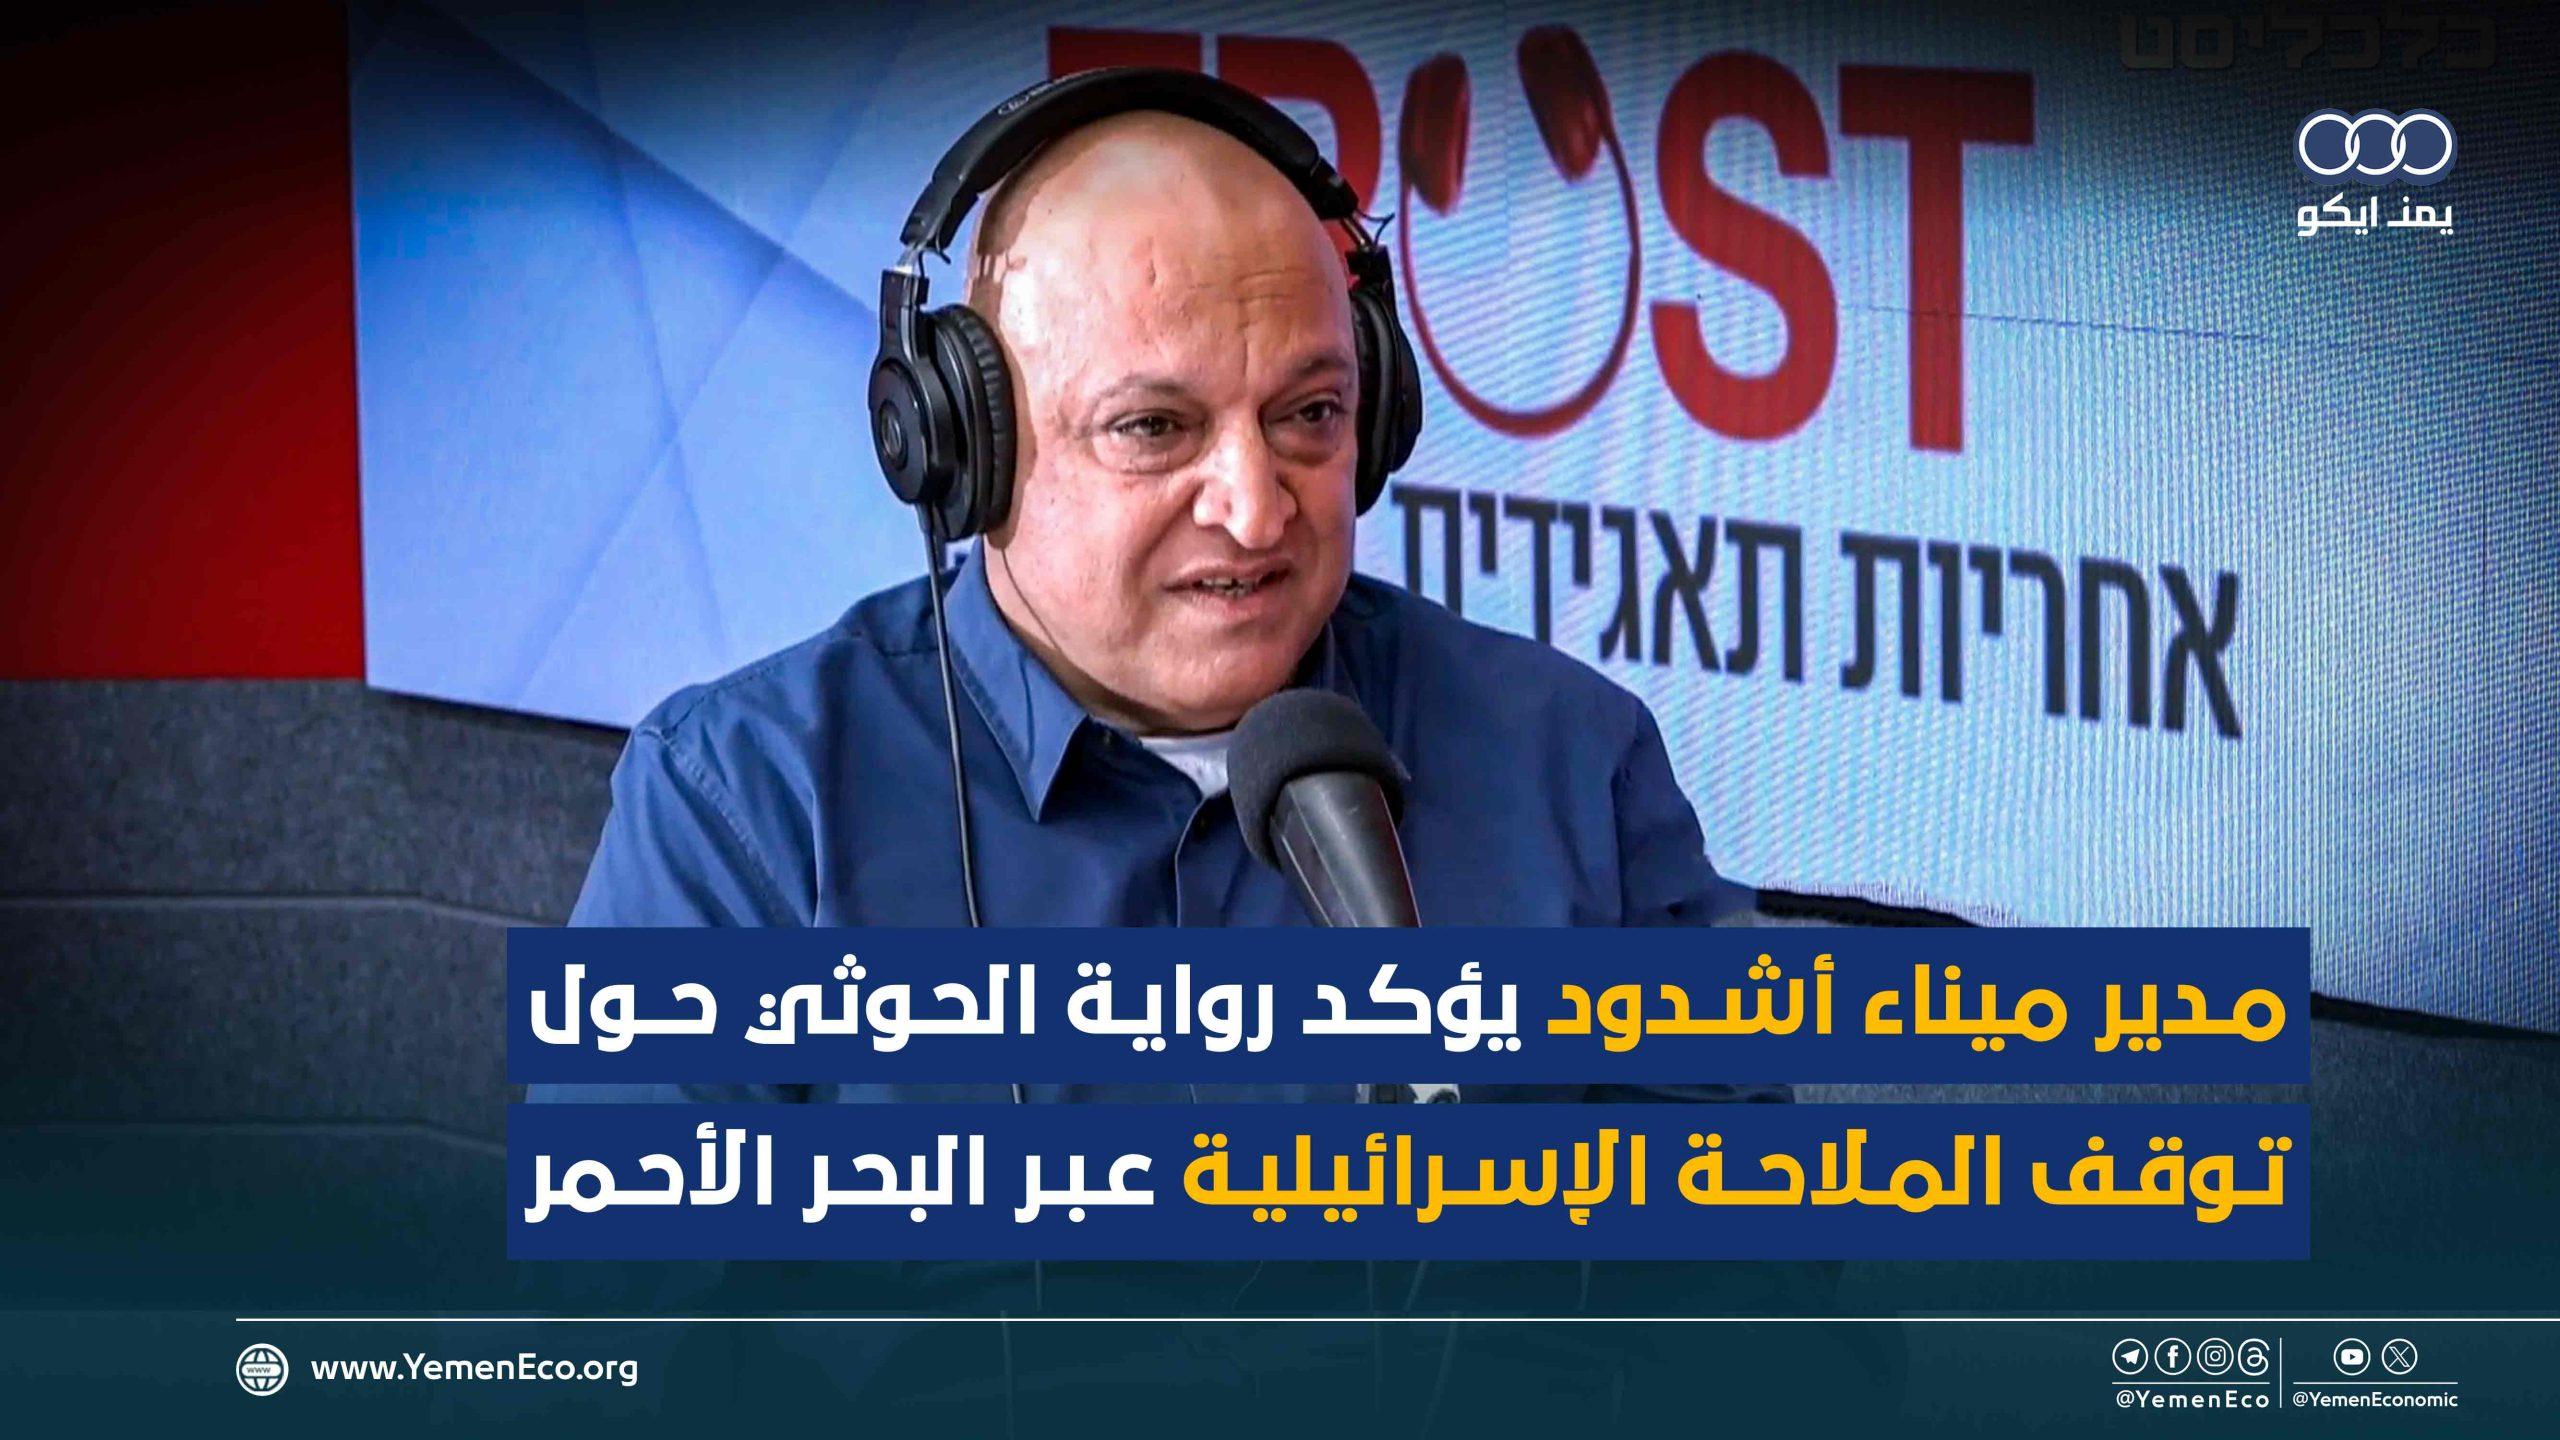 شاهد| مدير ميناء أشدود يؤكد رواية الحوثي حول توقف الملاحة الإسرائيلية عبر البحر الأحمر